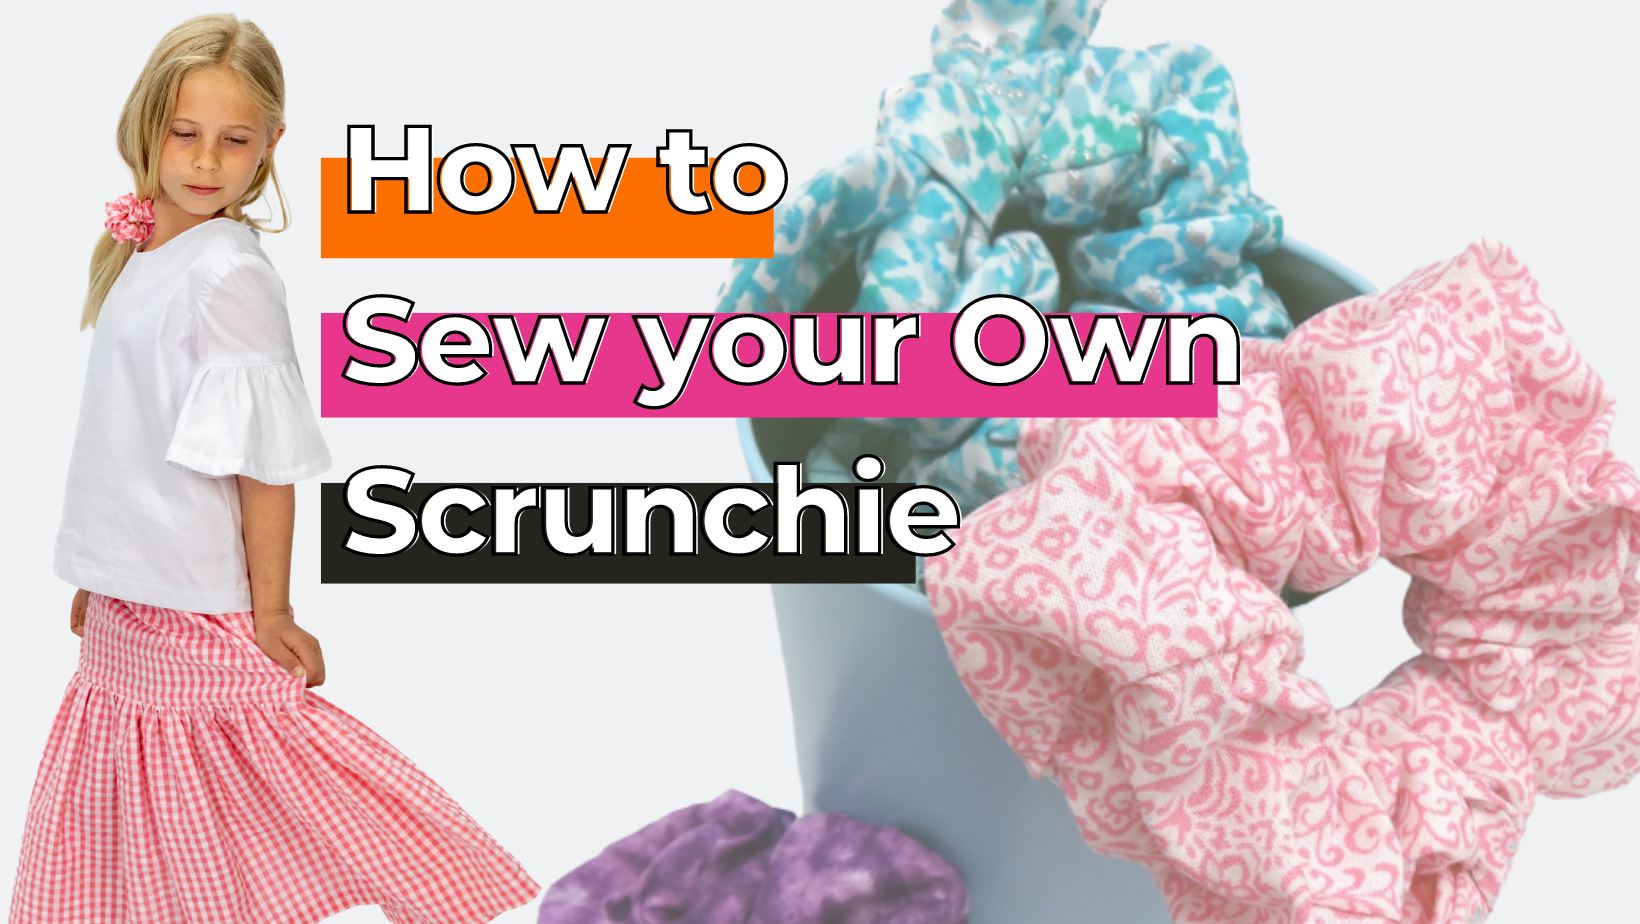 Scrunchie sewing tutorial